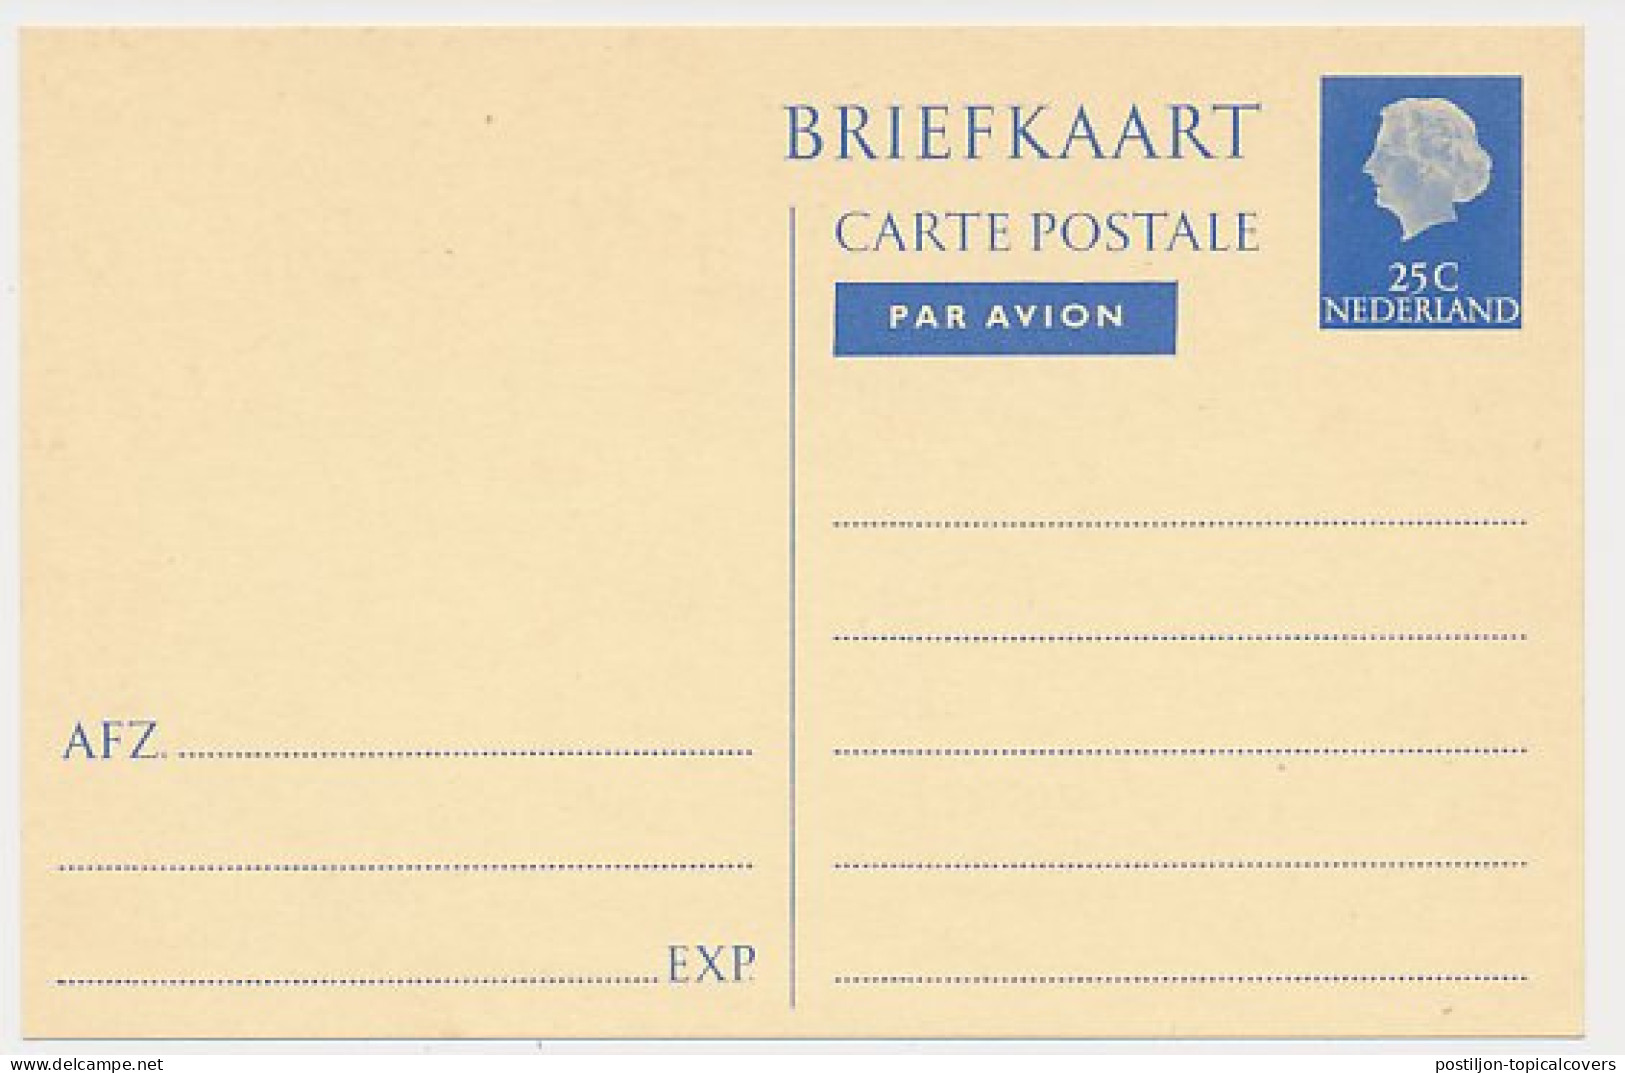 Briefkaart G. 341 - Entiers Postaux